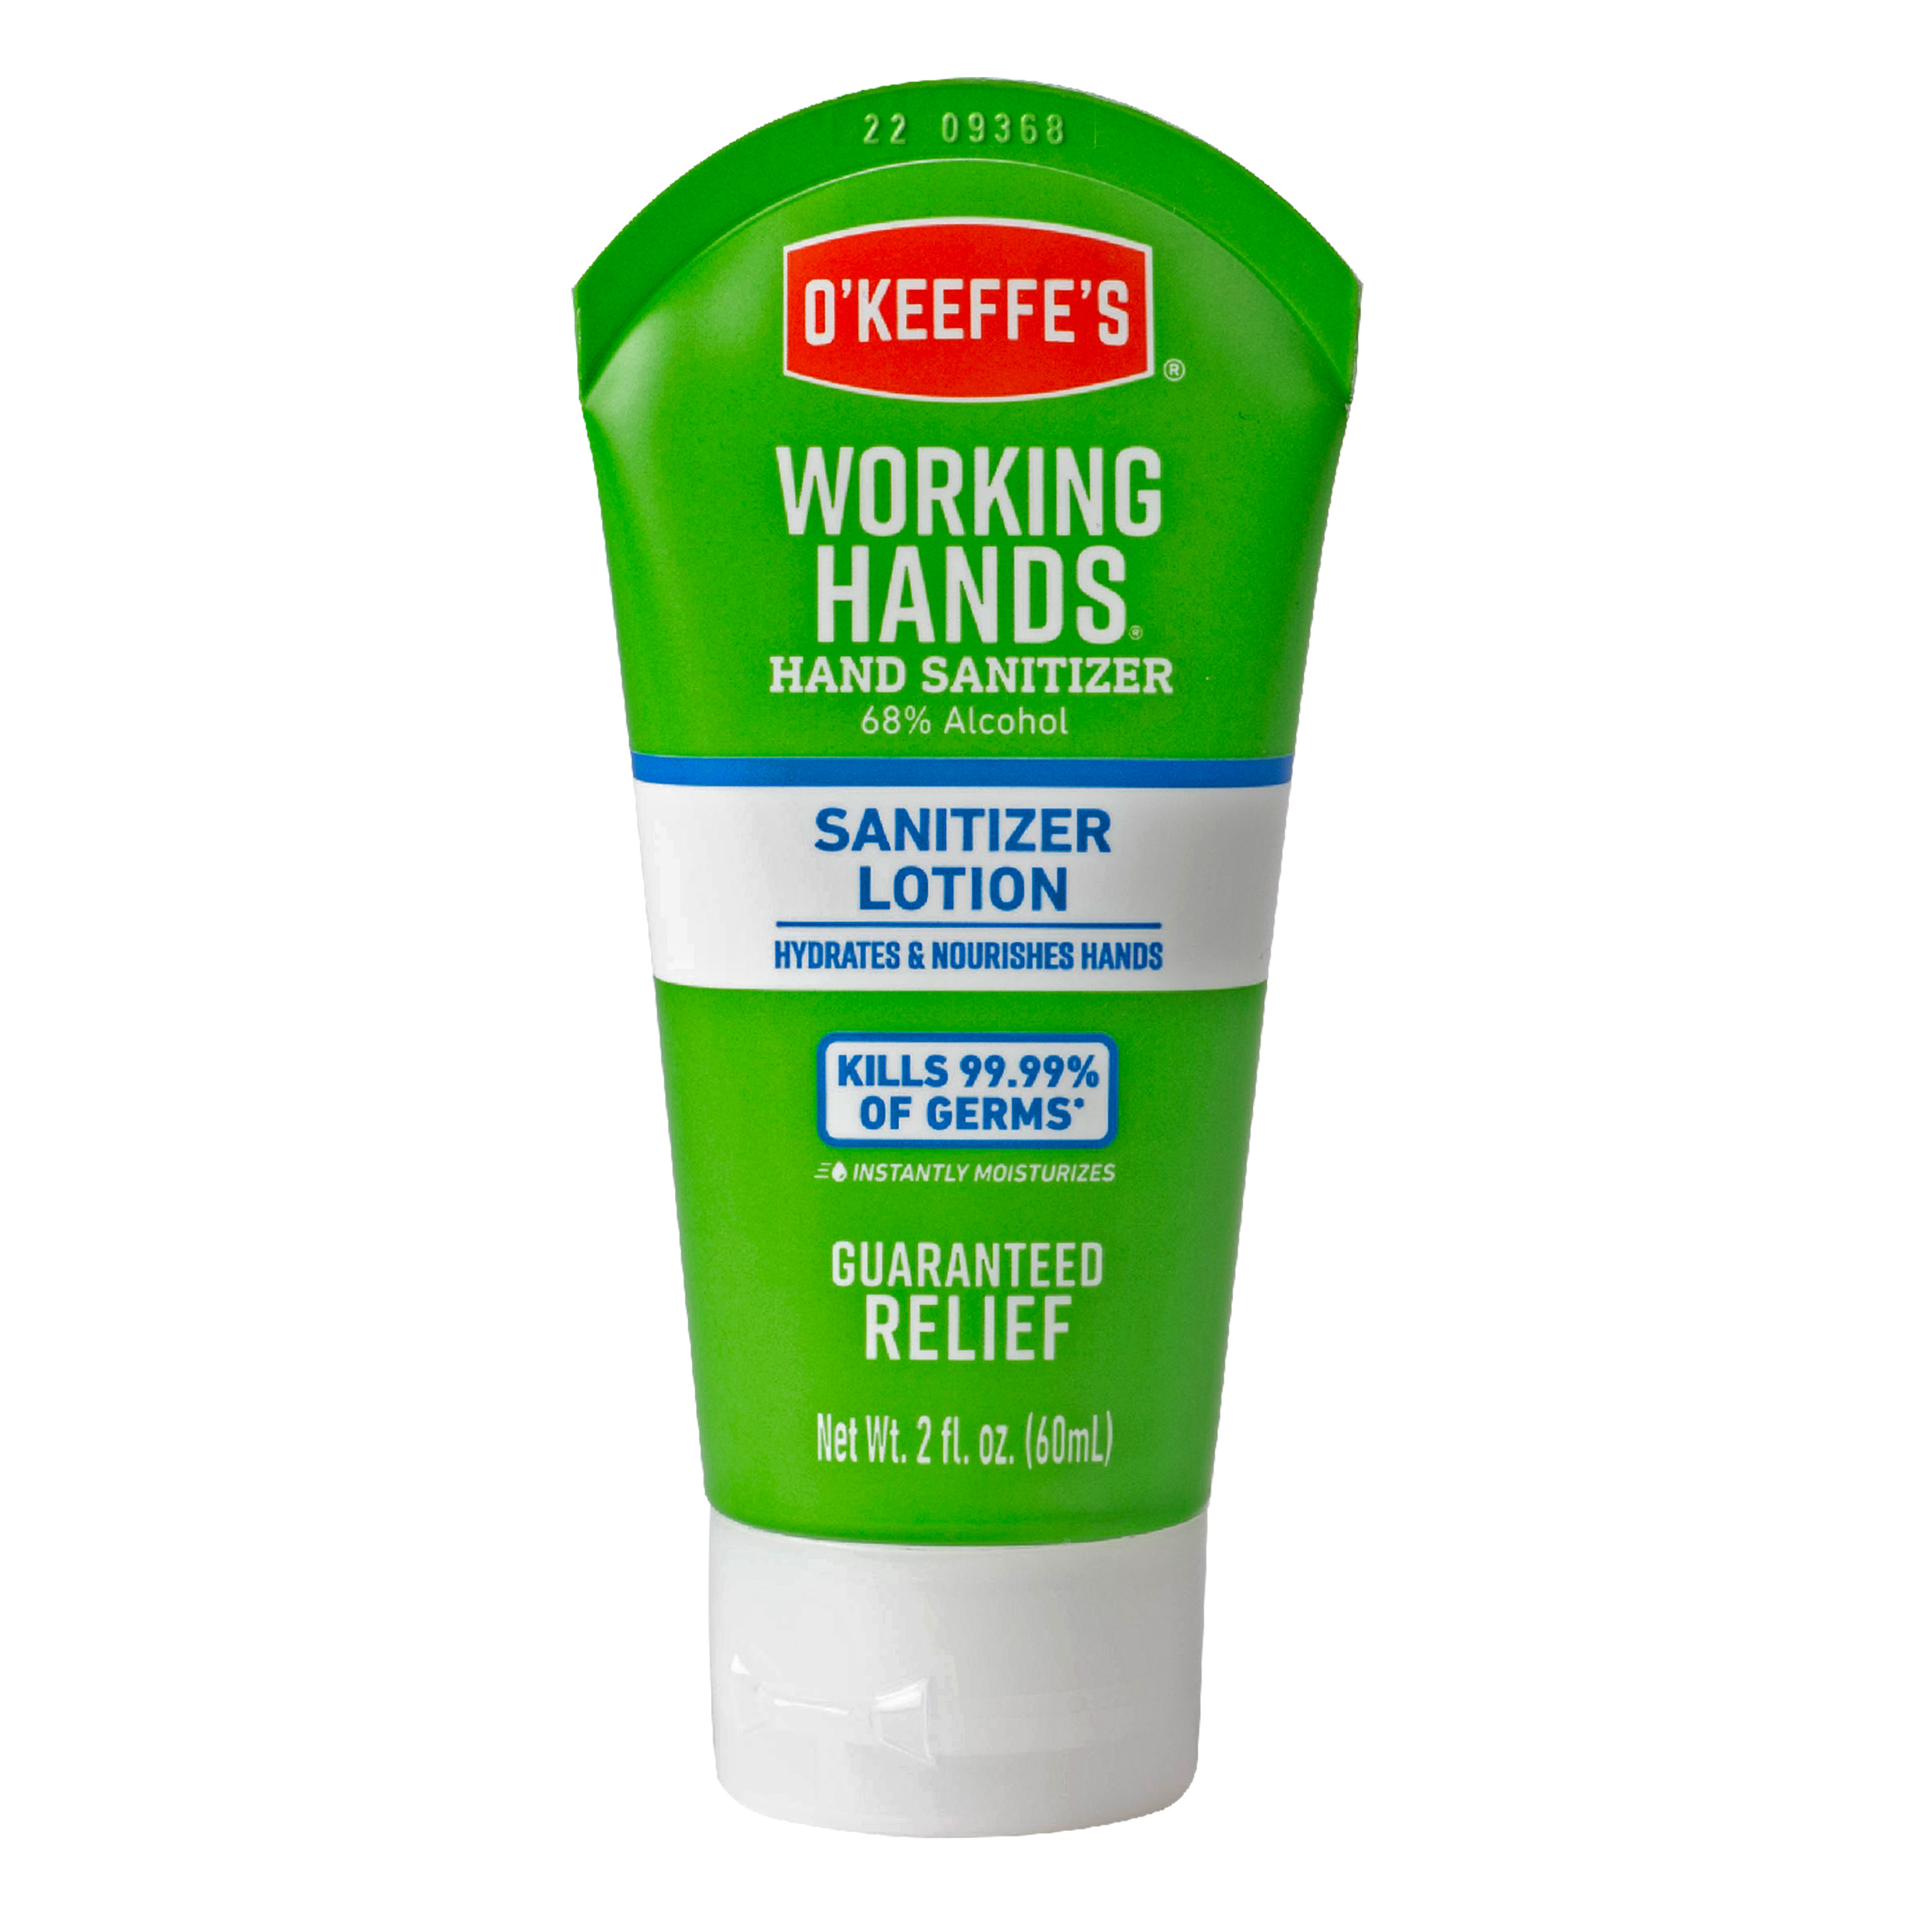 NEW Working Hands Hand Sanitizer